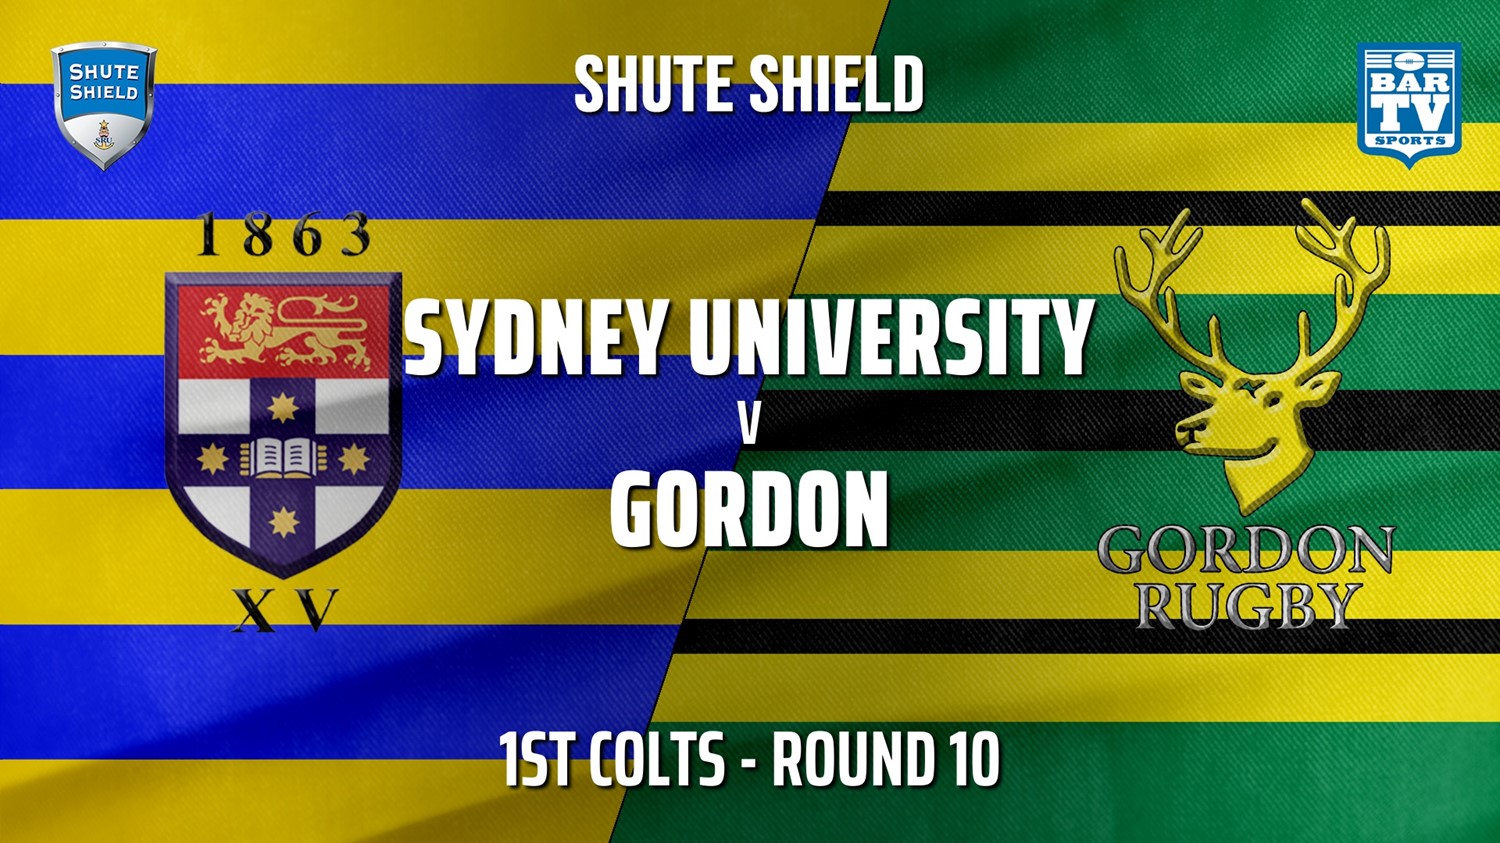 210619-Shute Shield Round 10 - 1st Colts - Sydney University v Gordon Slate Image